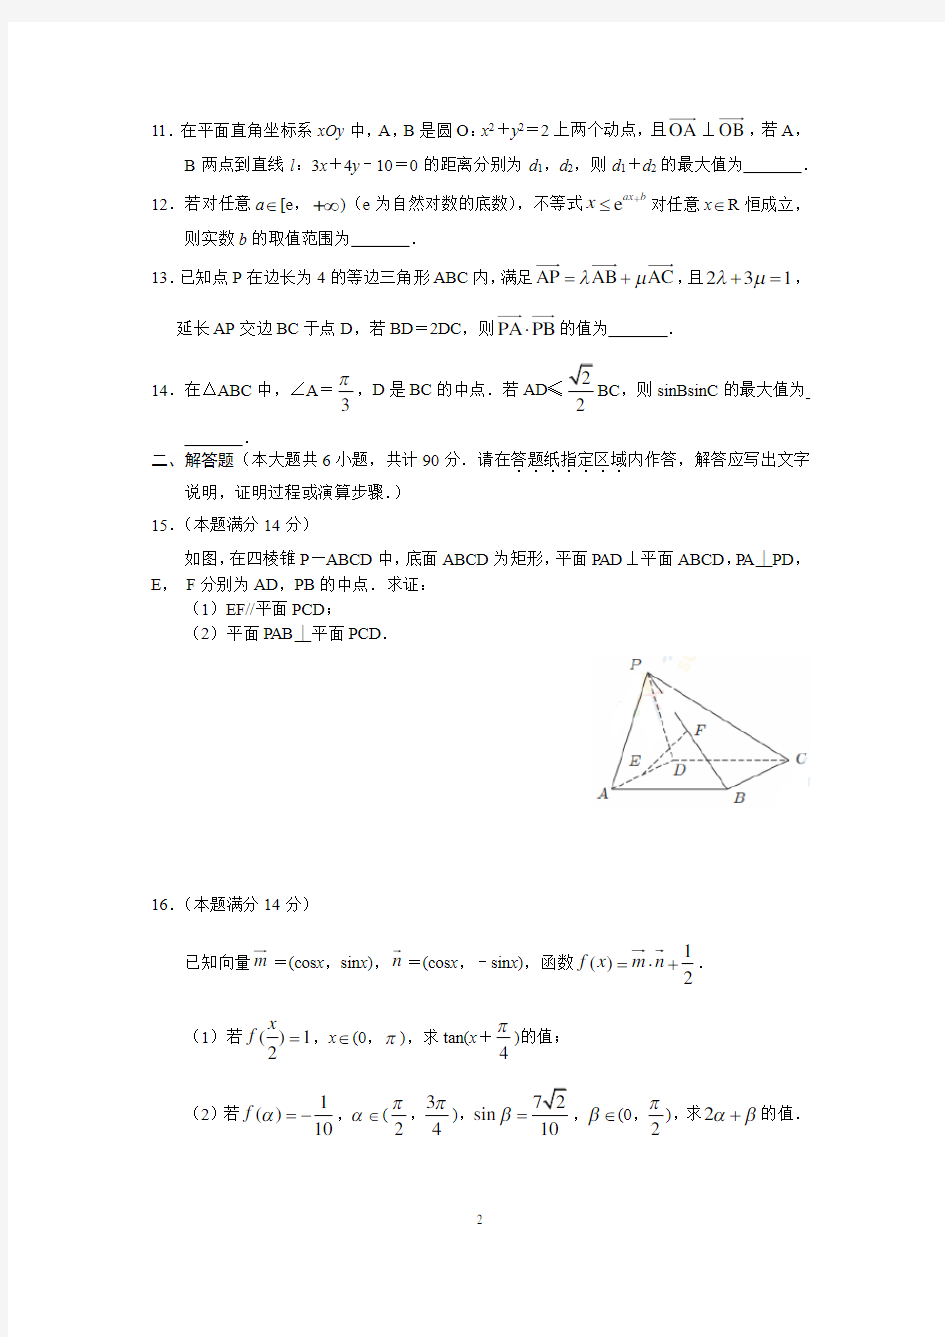 江苏省南京市2020届高三年级第三次模拟考试数学试题含附加题(解析版)